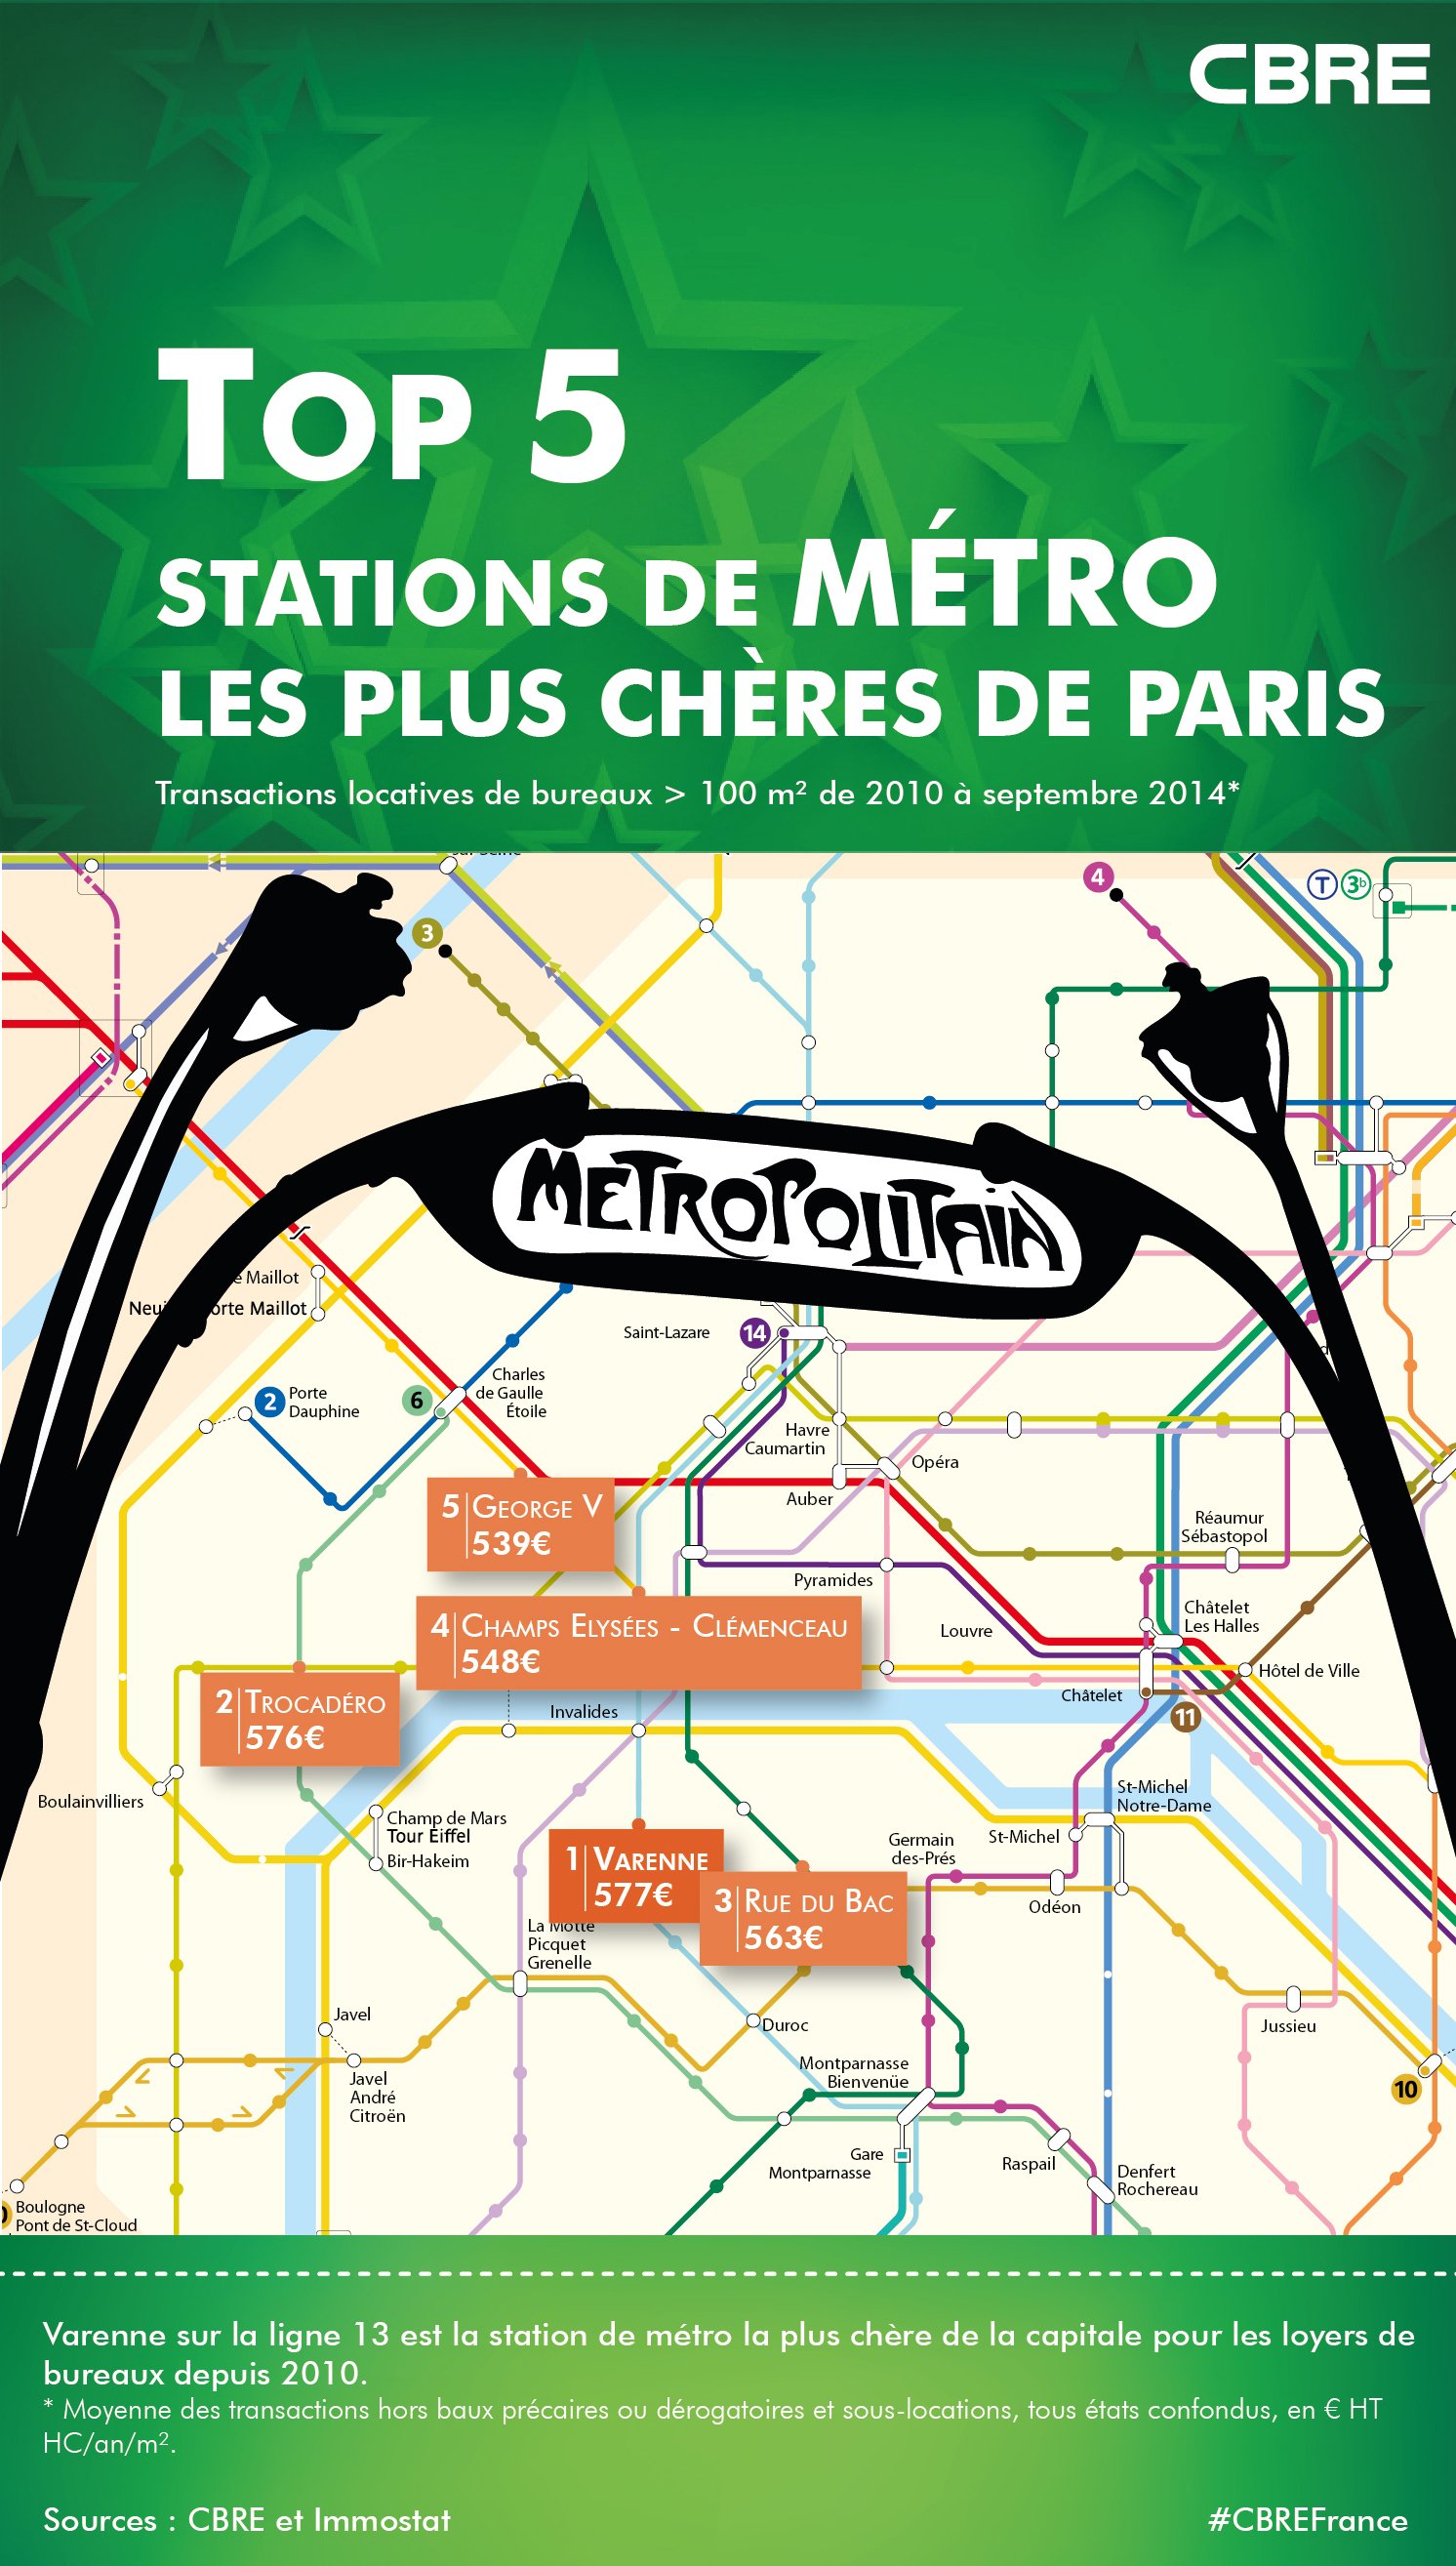 Varenne, station de métro la plus chère de Paris pour les loyers de bureaux